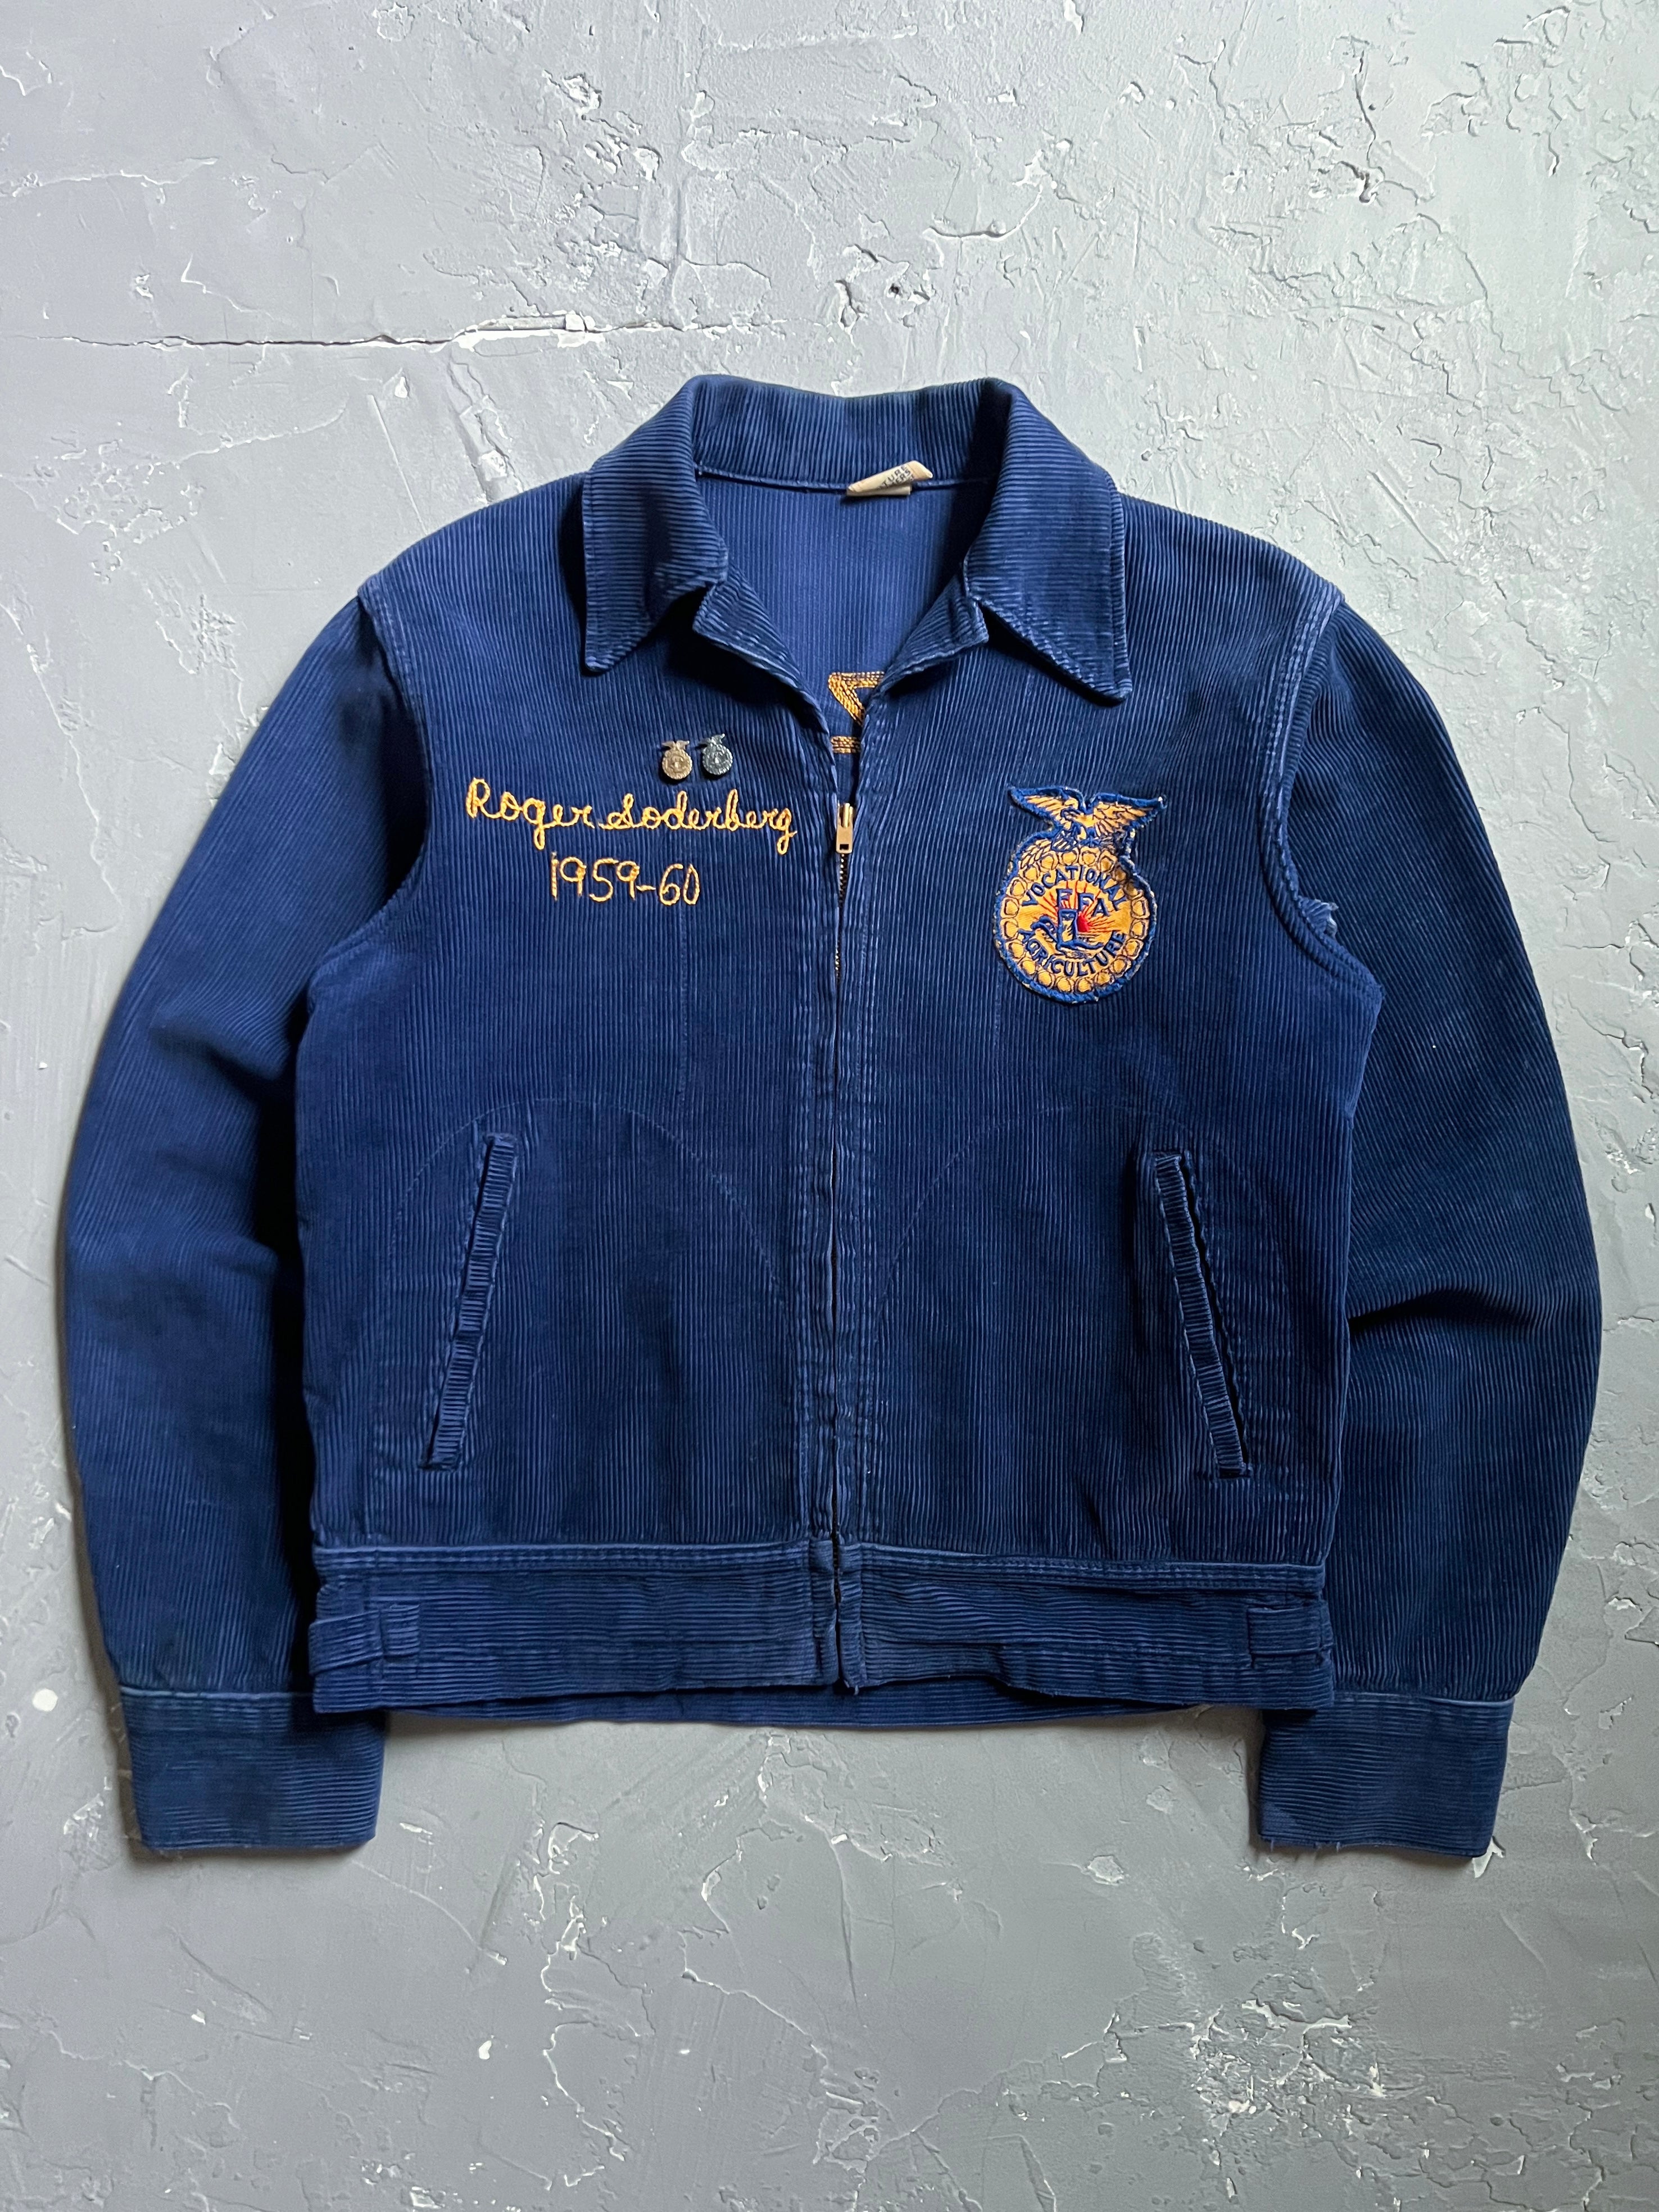 1960 “Washington Arizona” Corduroy FFA Jacket [M] – From The Past